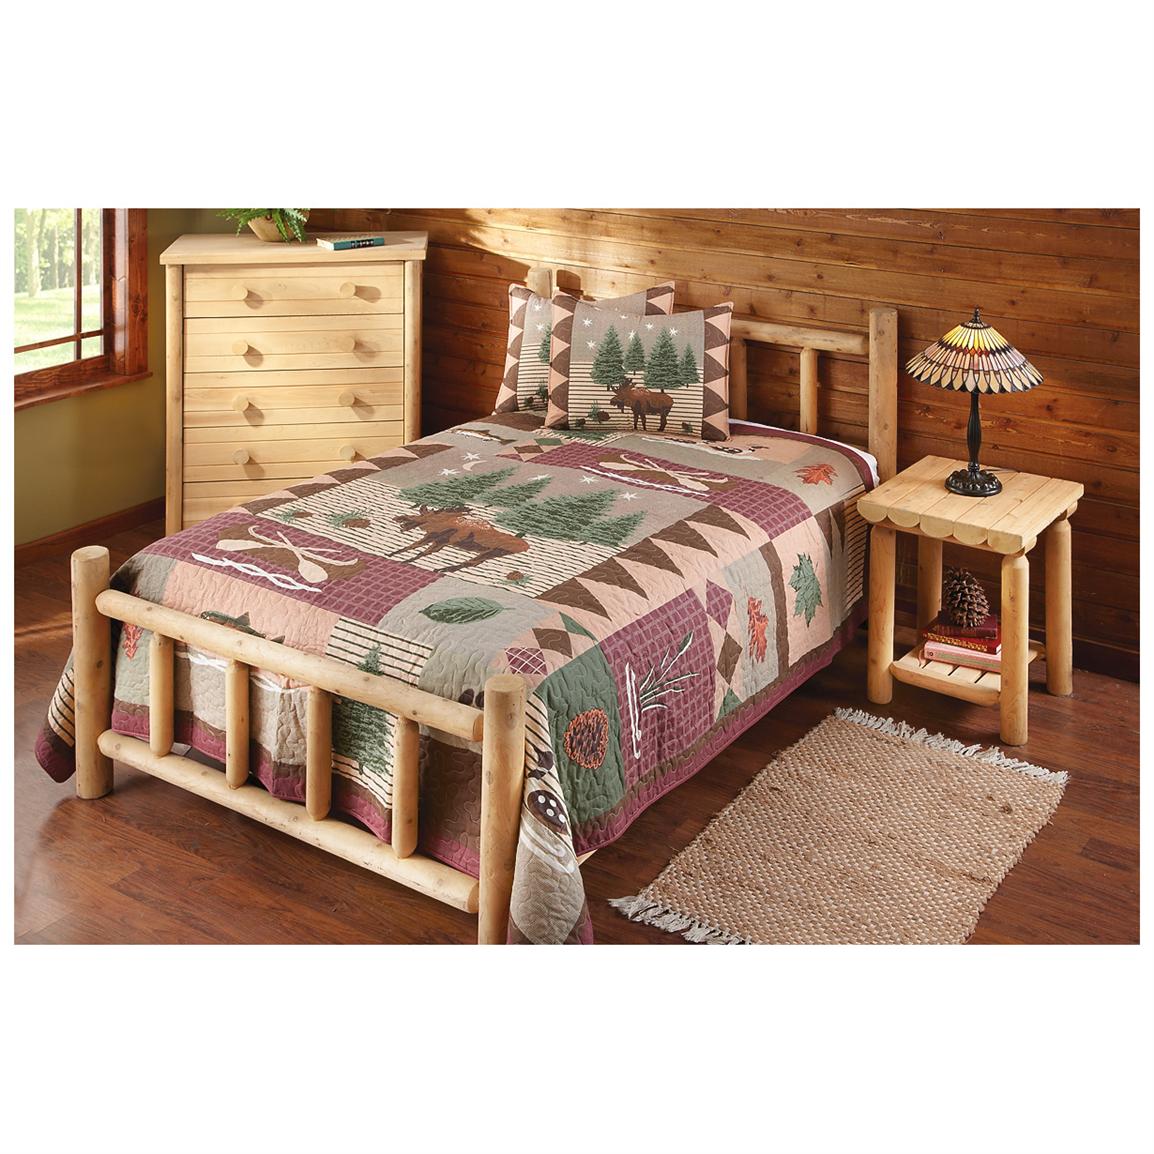 CASTLECREEK Cedar Log Bed, King  235870, Bedroom Sets at Sportsmanu002639;s Guide